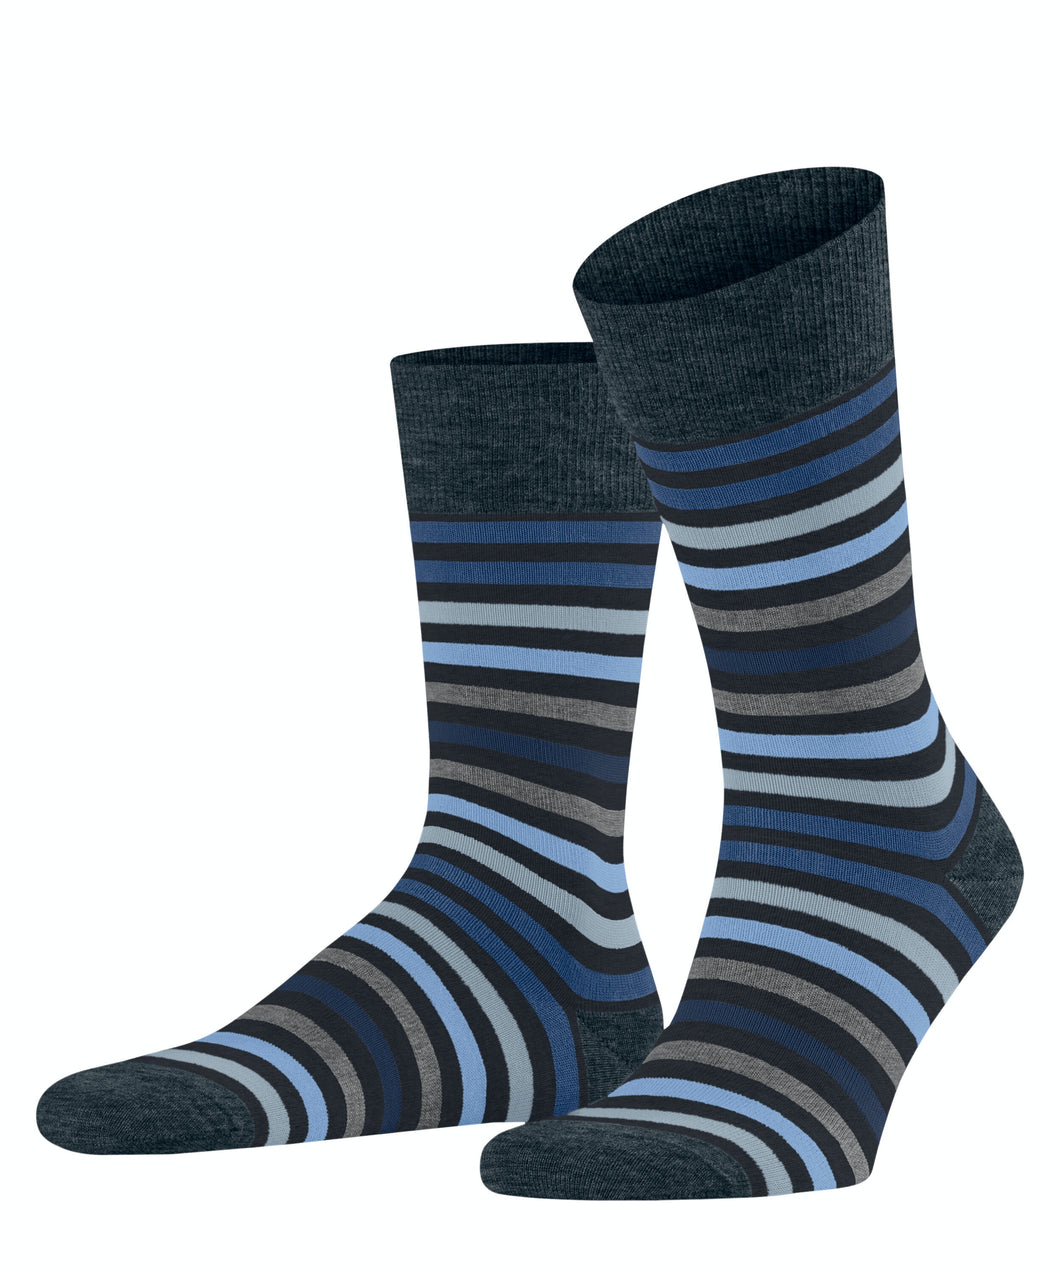 FALKE Tinted Stripe Socks in Navy